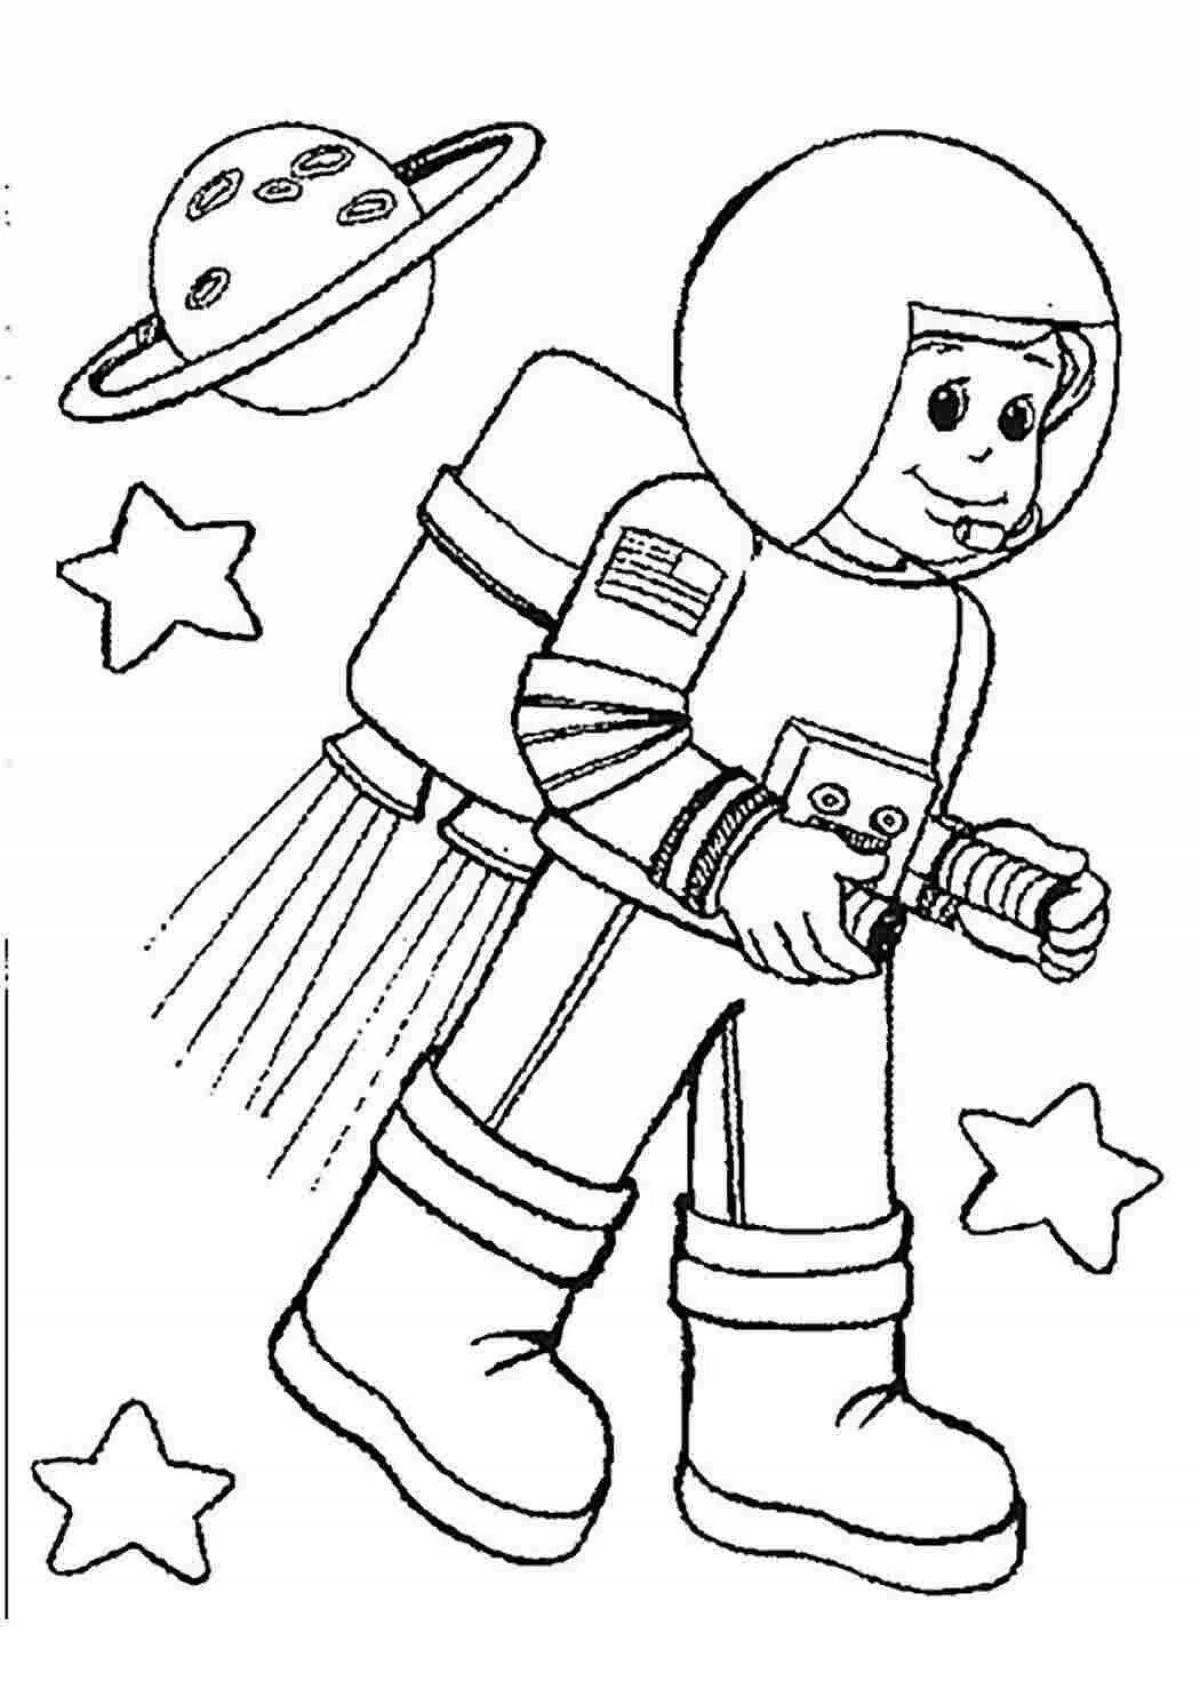 Рисунок на тему космонавт. Космонавт раскраска для детей. Космос раскраска для детей. Раскраска. Профессии. Раскраски ко Дню космонавтики.